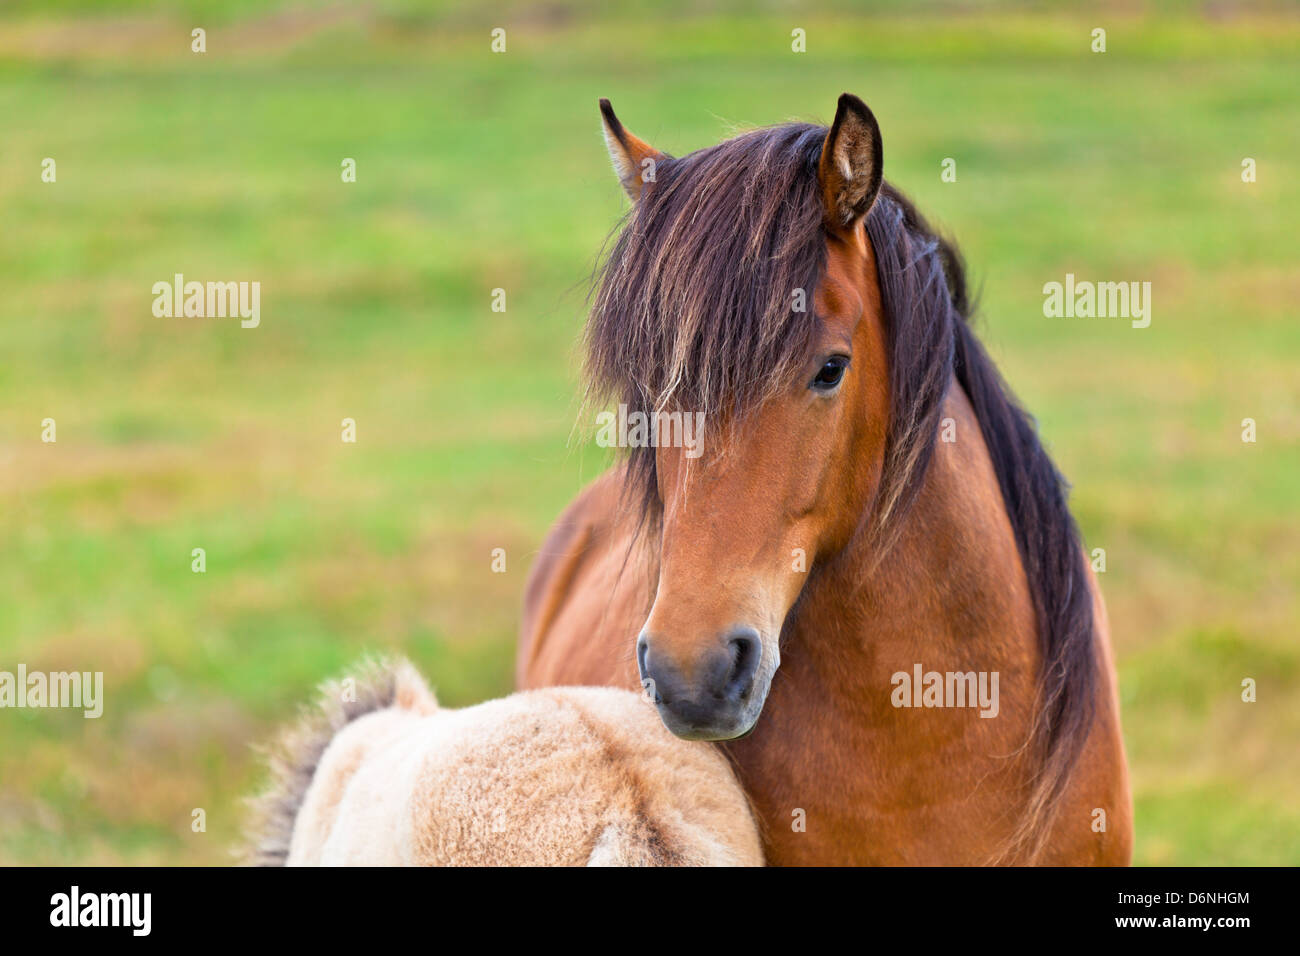 Marrone a cavallo e il suo puledro in un campo Verde di erba. Inquadratura orizzontale Foto Stock